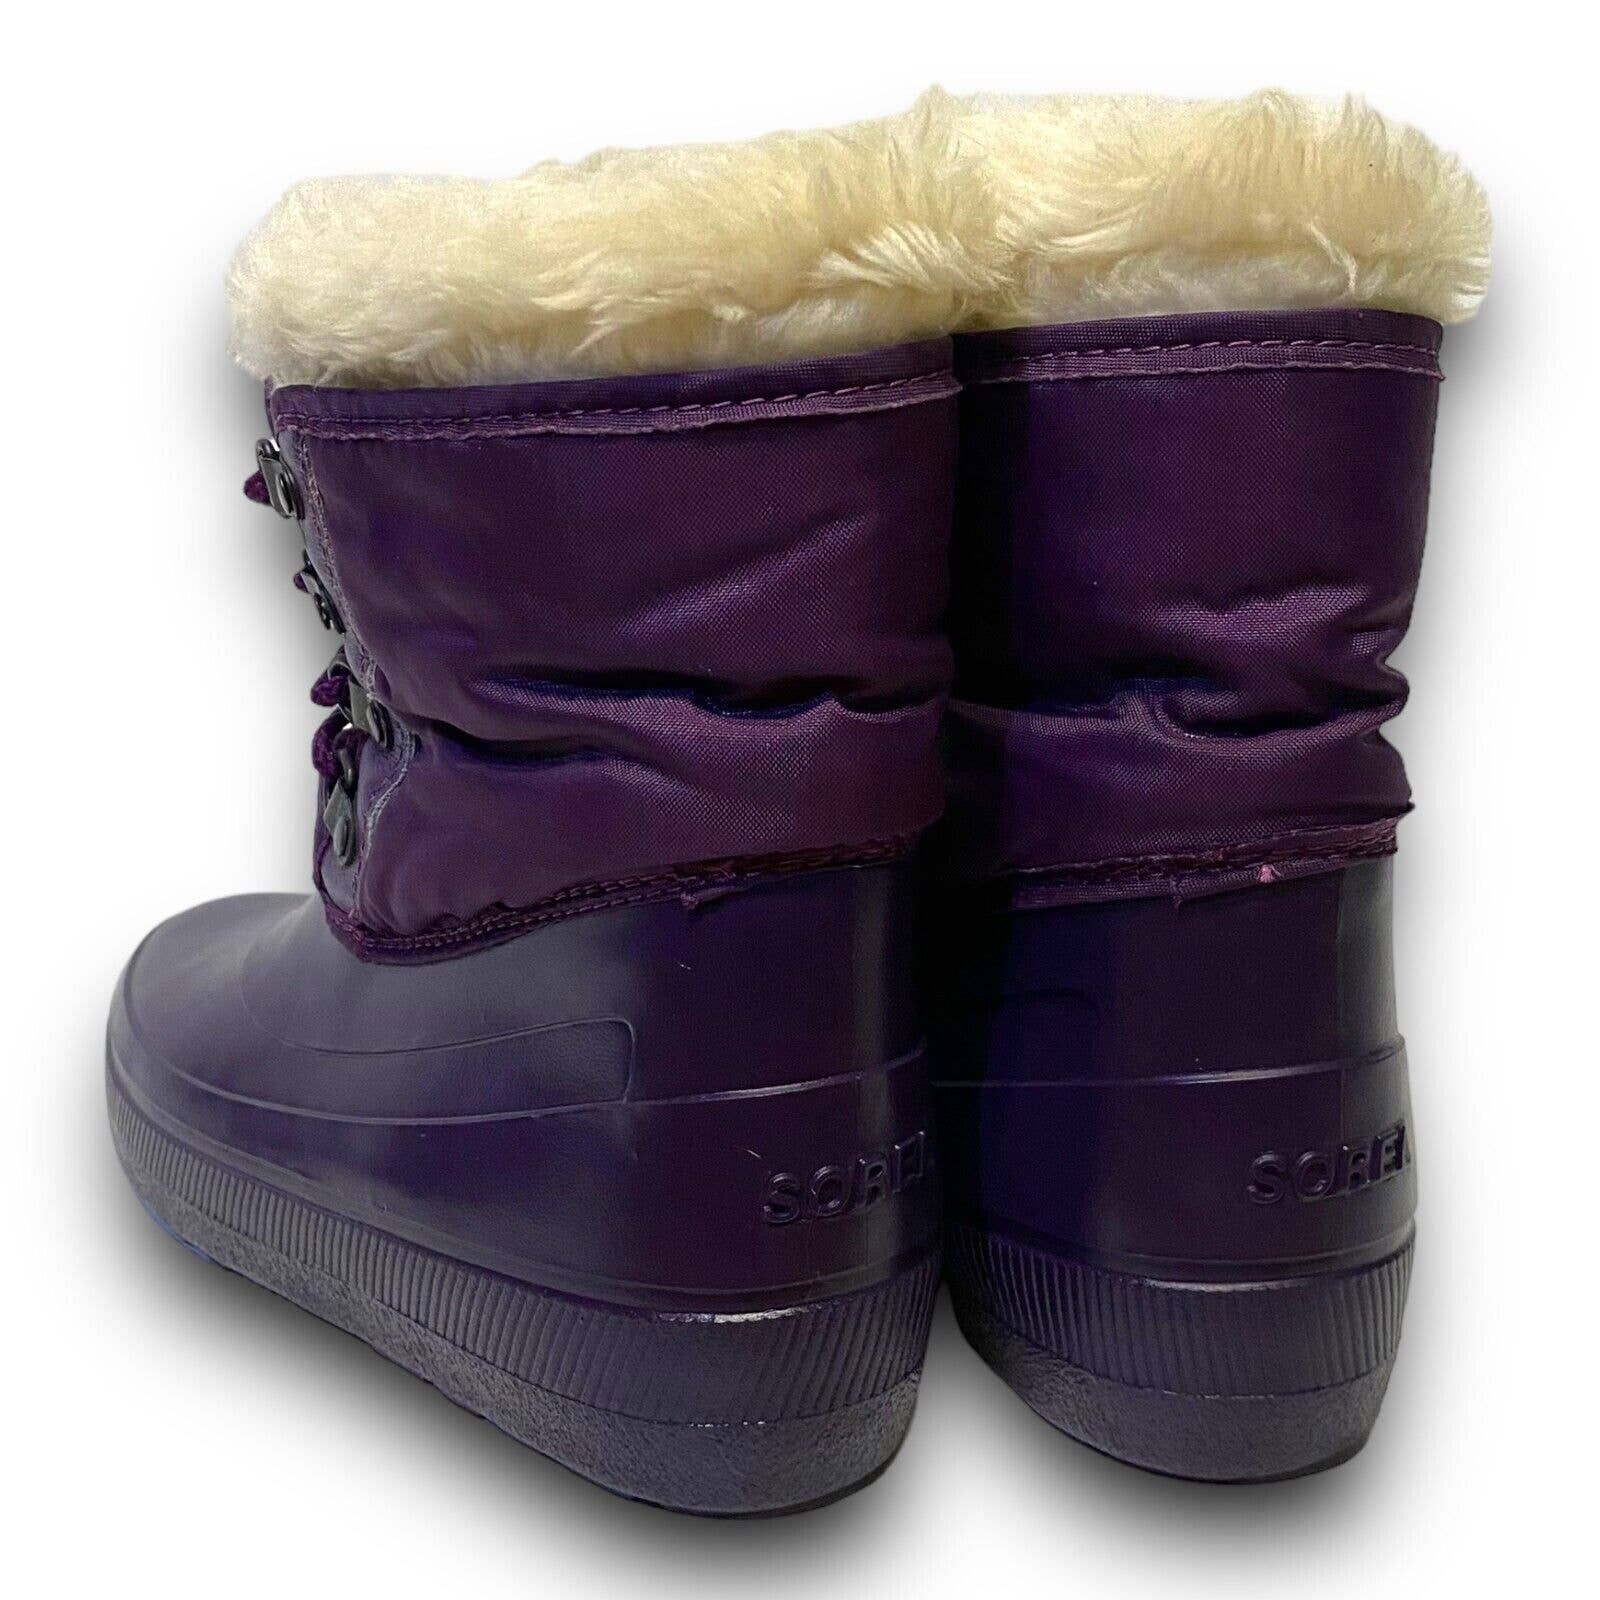 Vintage Vintage Sorel Purple Fur Lined Rubber Winter Rain Snow Boots Size US 5 / IT 35 - 2 Preview